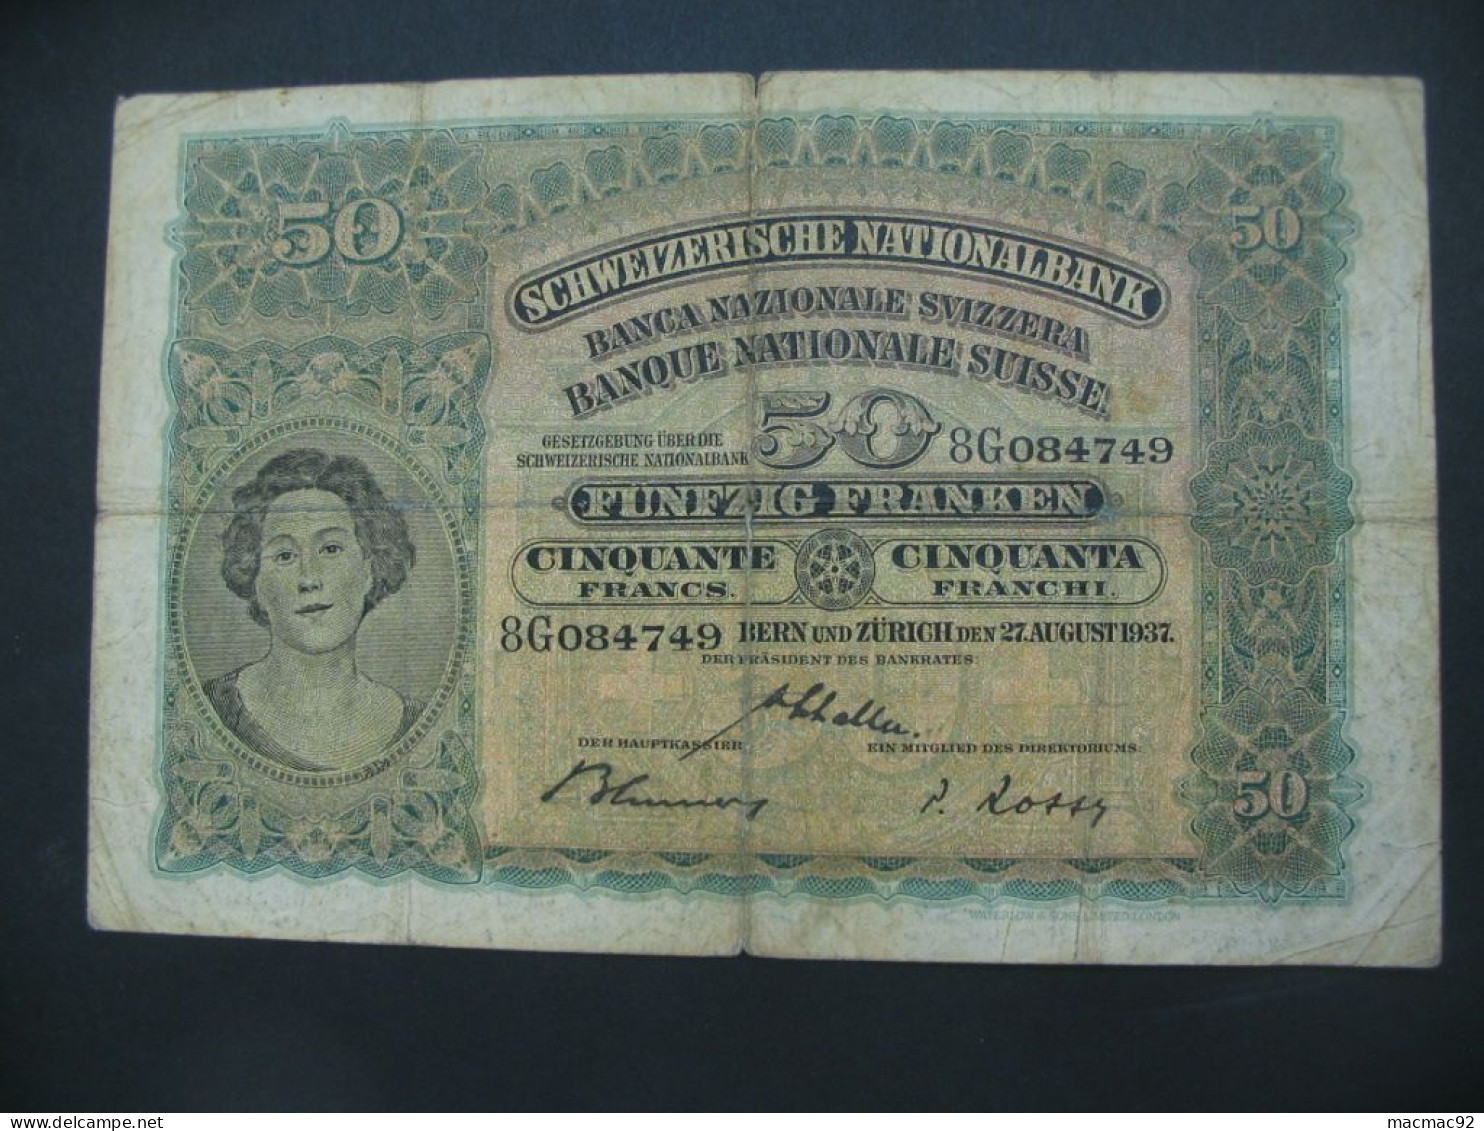 RARE Billet Suisse - 50 Francs 1937 Schweizerische Nationalbank **** EN ACHAT IMMEDIAT **** - Switzerland